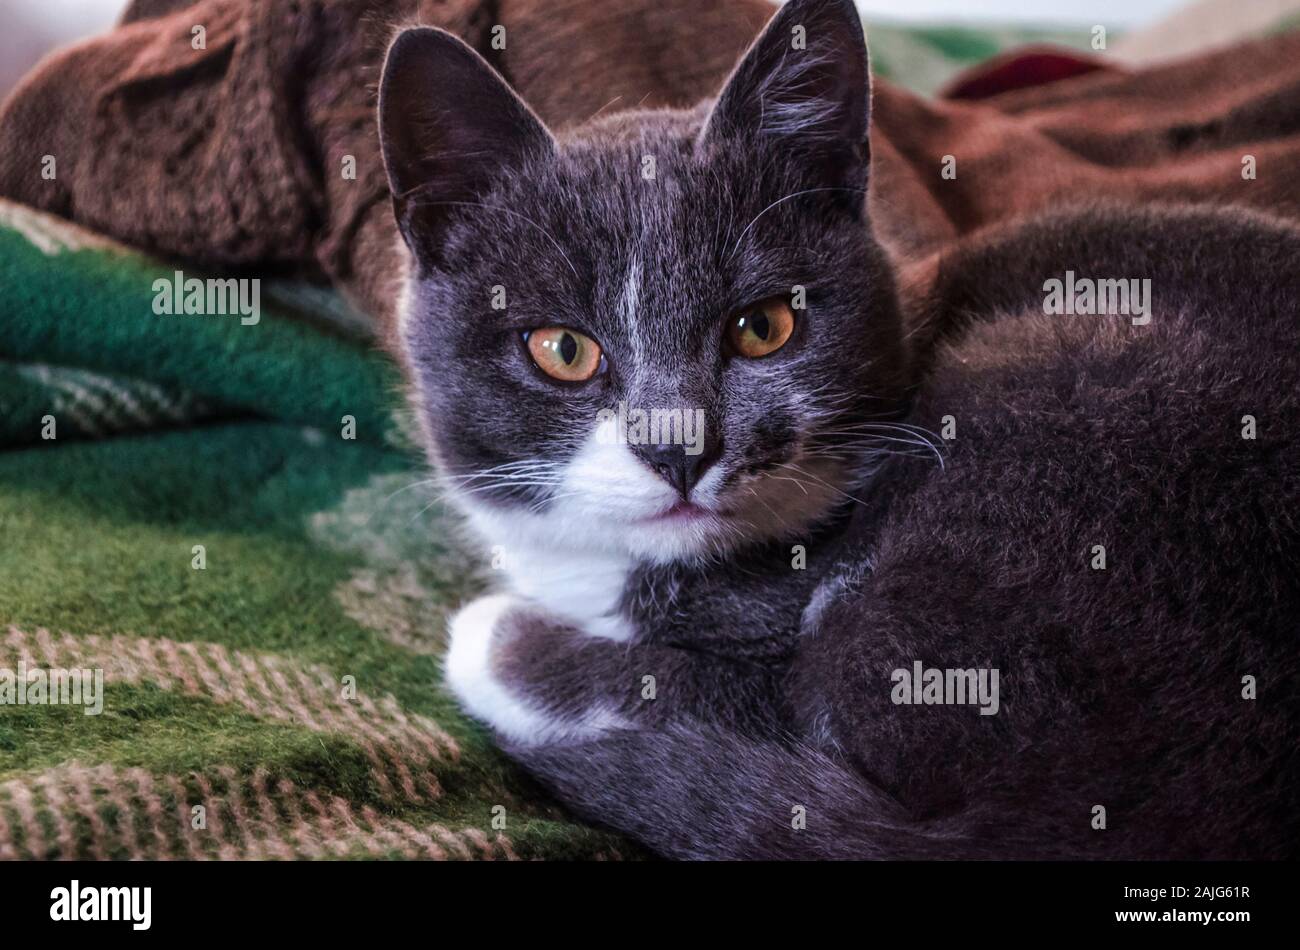 Eine intelligente, niedliche graue Kätzchen mit großen expressiven gelbe Augen sitzt auf einem grünen Wolldecke. Stockfoto